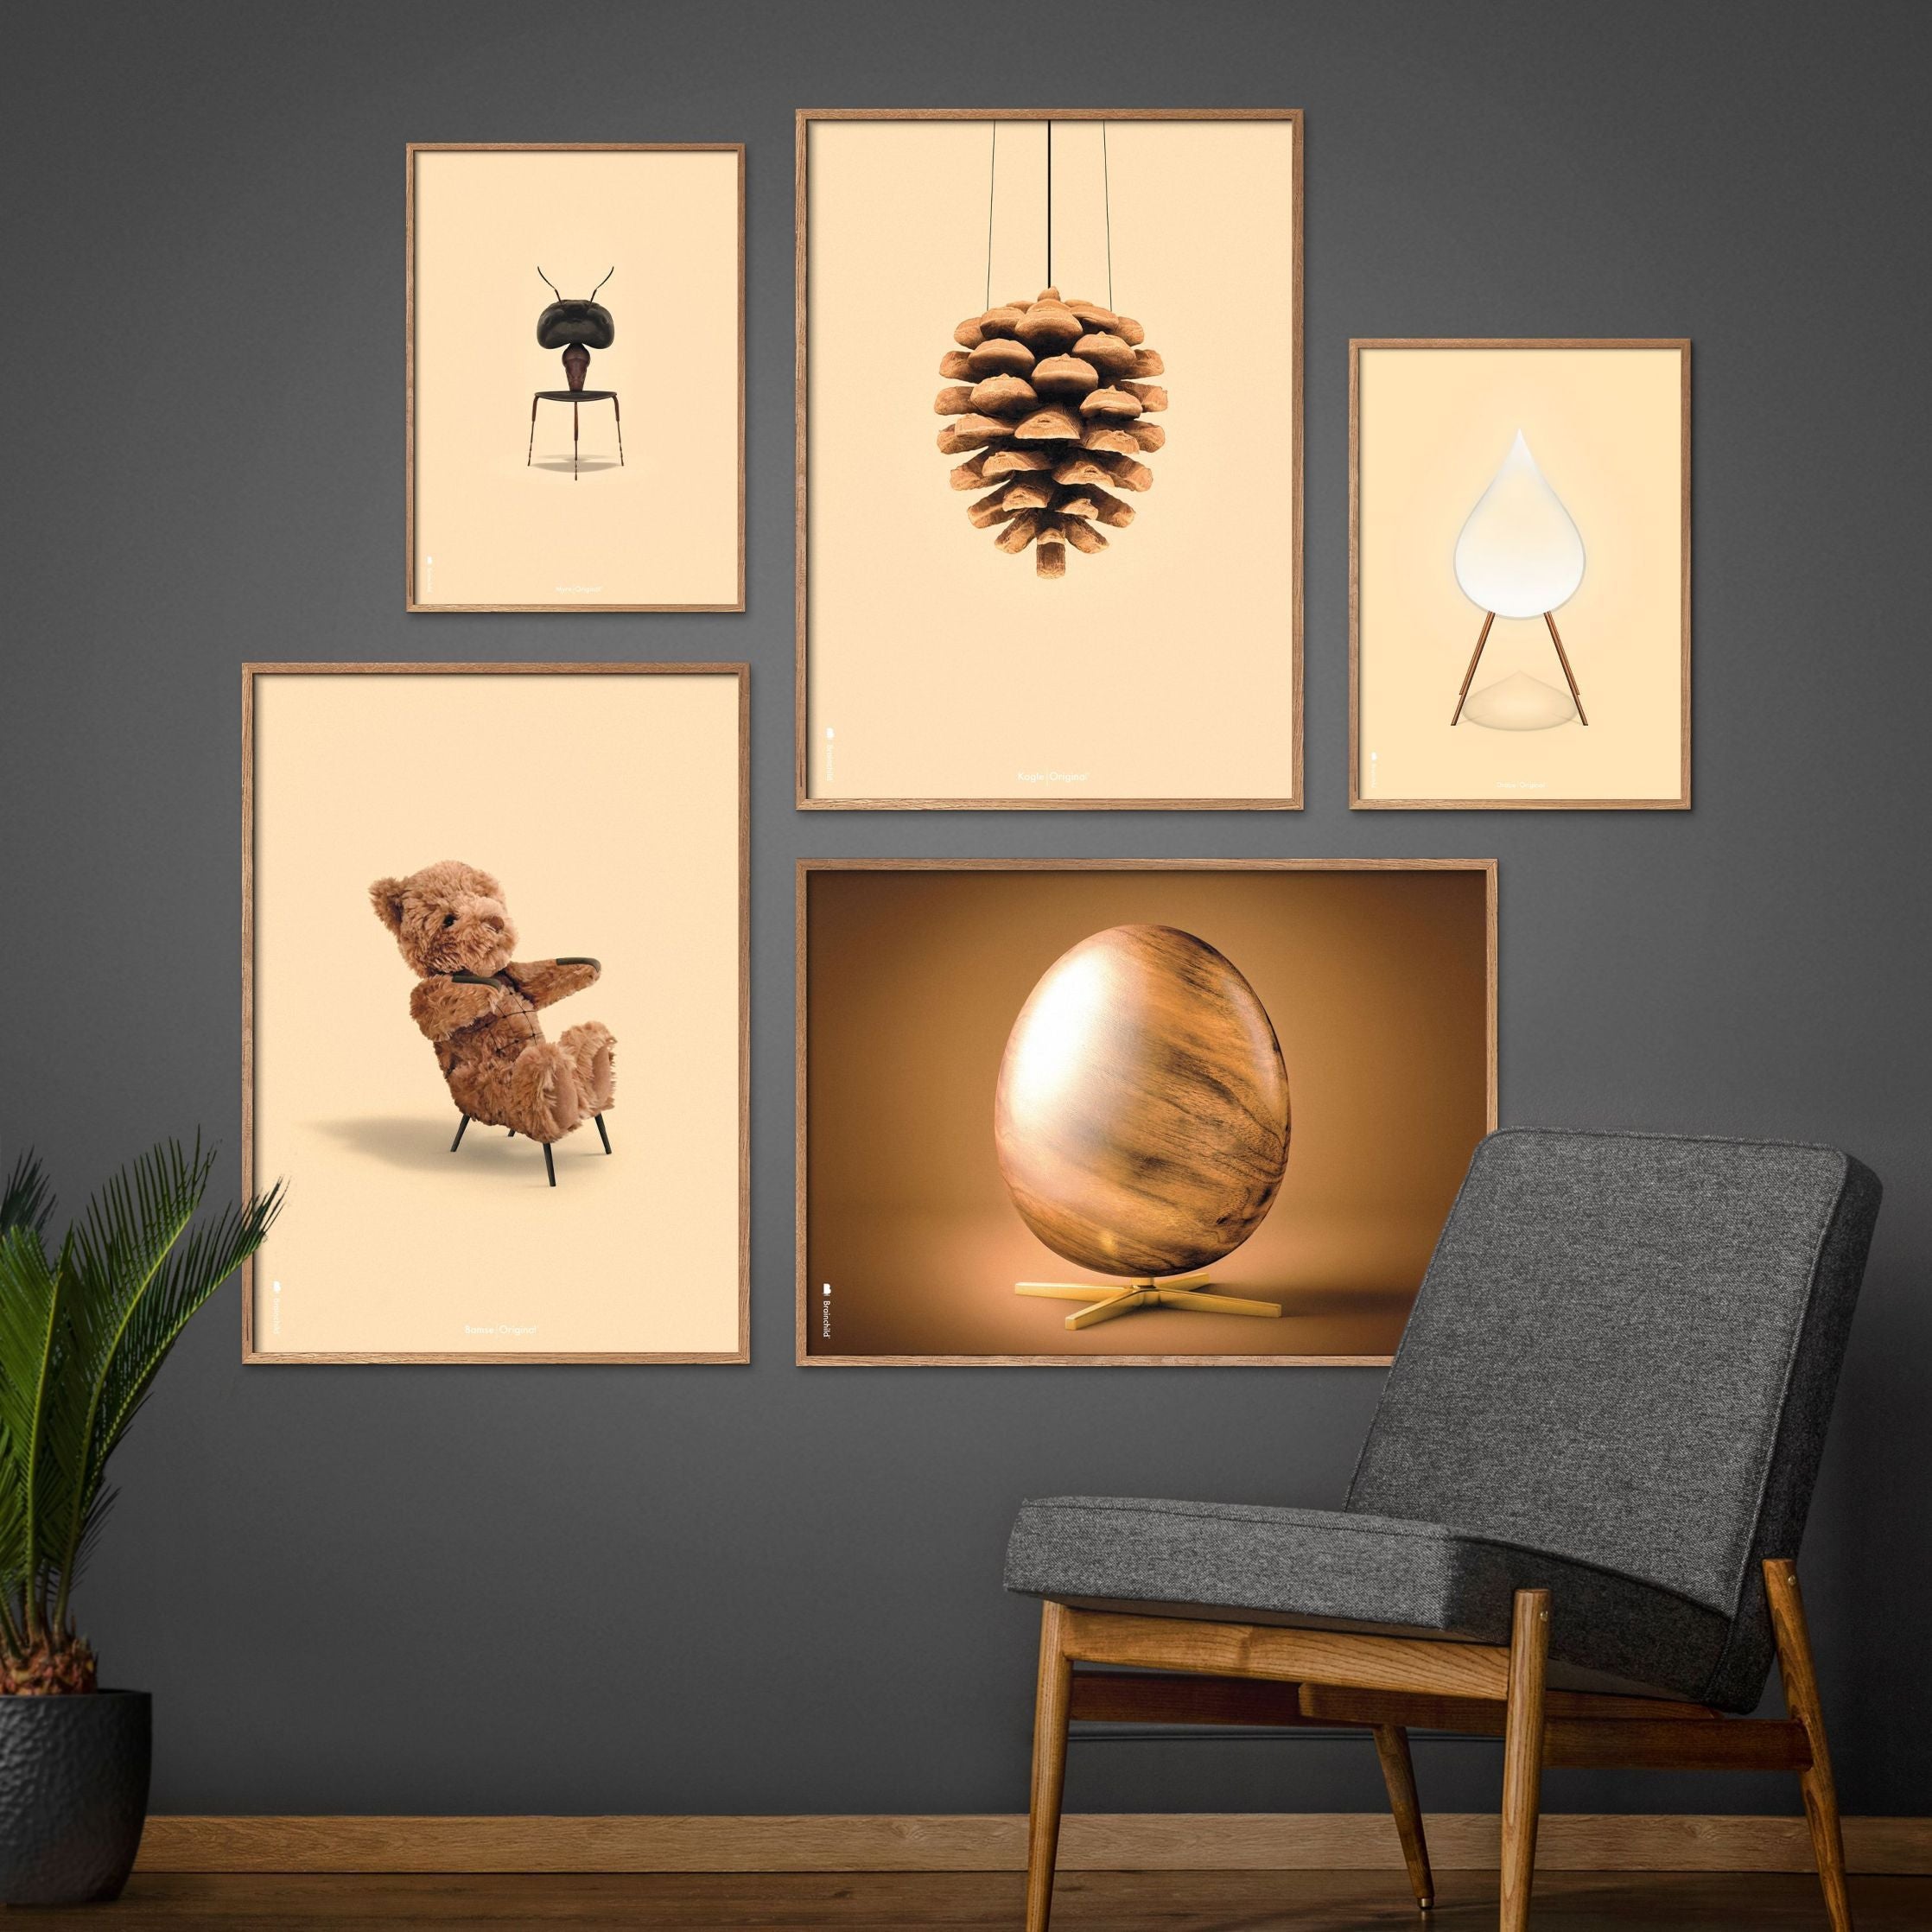 Brainchild Pine Cone Classic Poster, ram gjord av lätt trä 50x70 cm, sandfärgad bakgrund